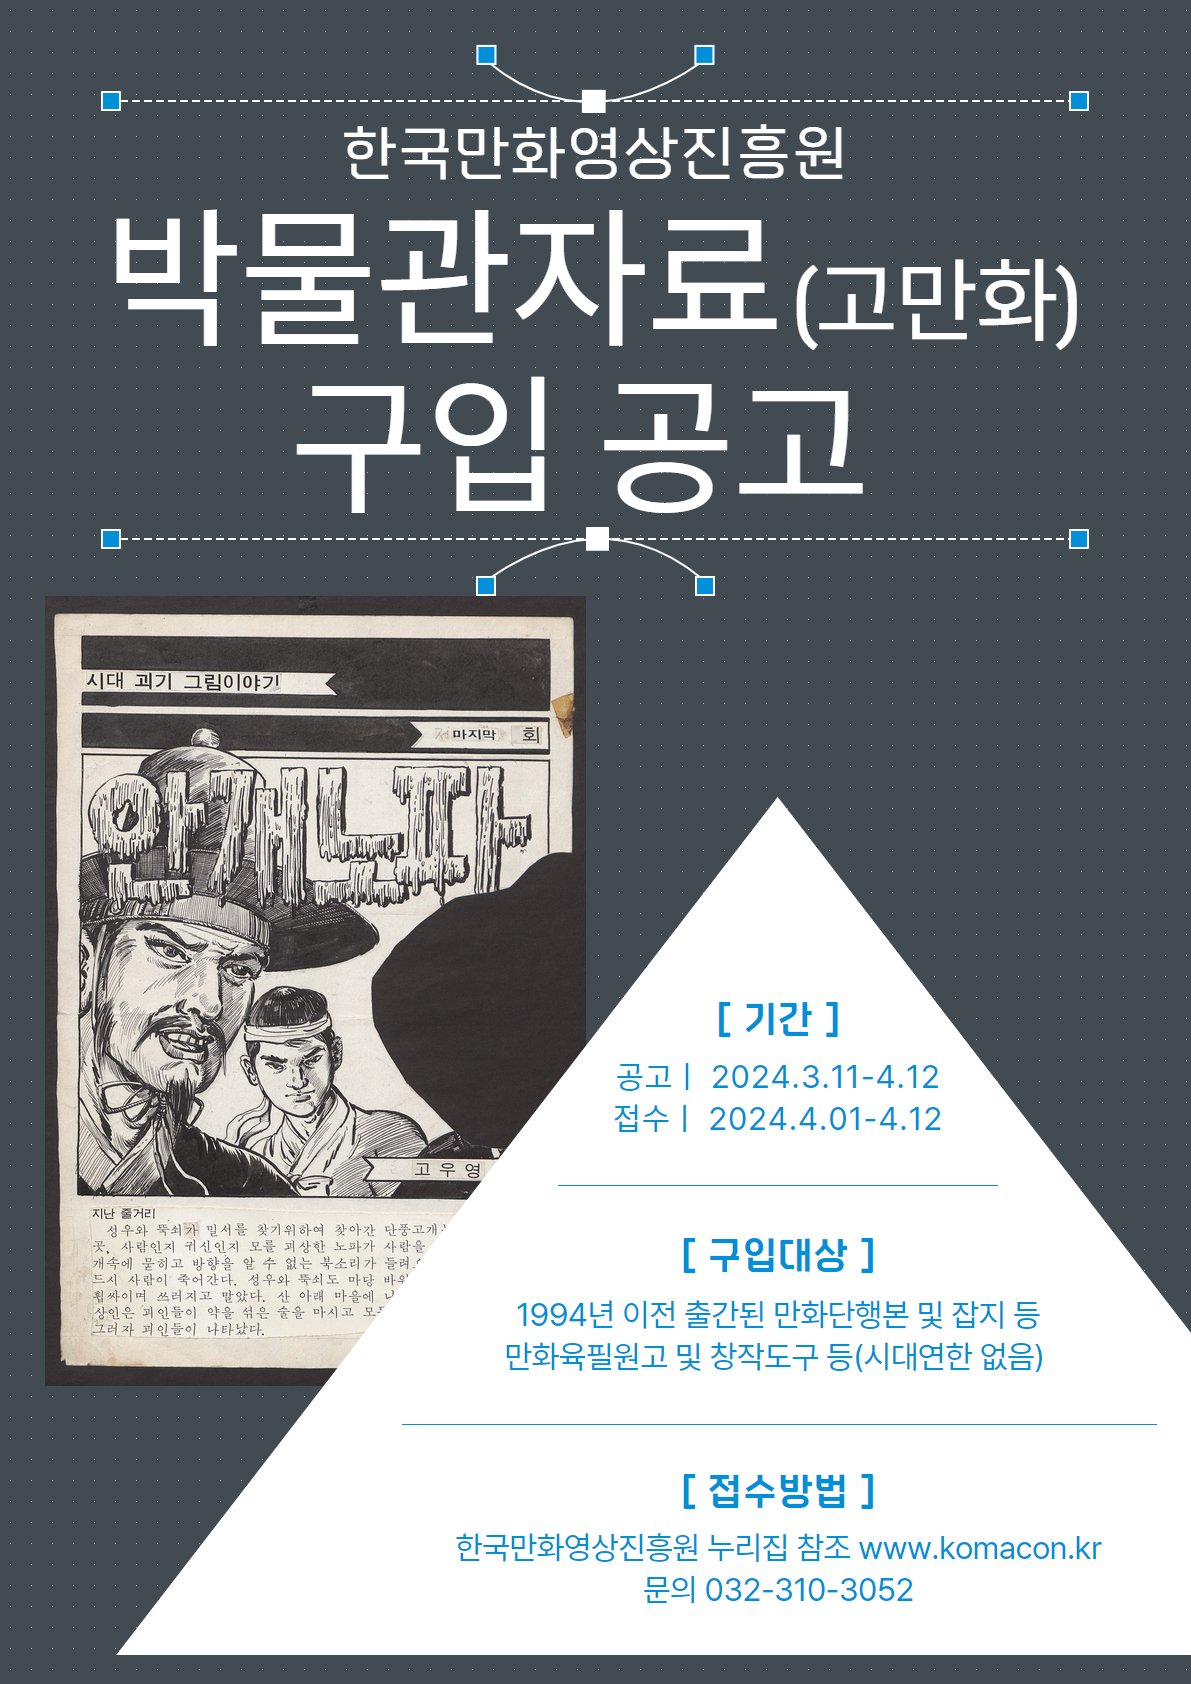 한국만화영상진흥원 박물관자료(고만화) 구입 공고. 상세내용 하단 참조